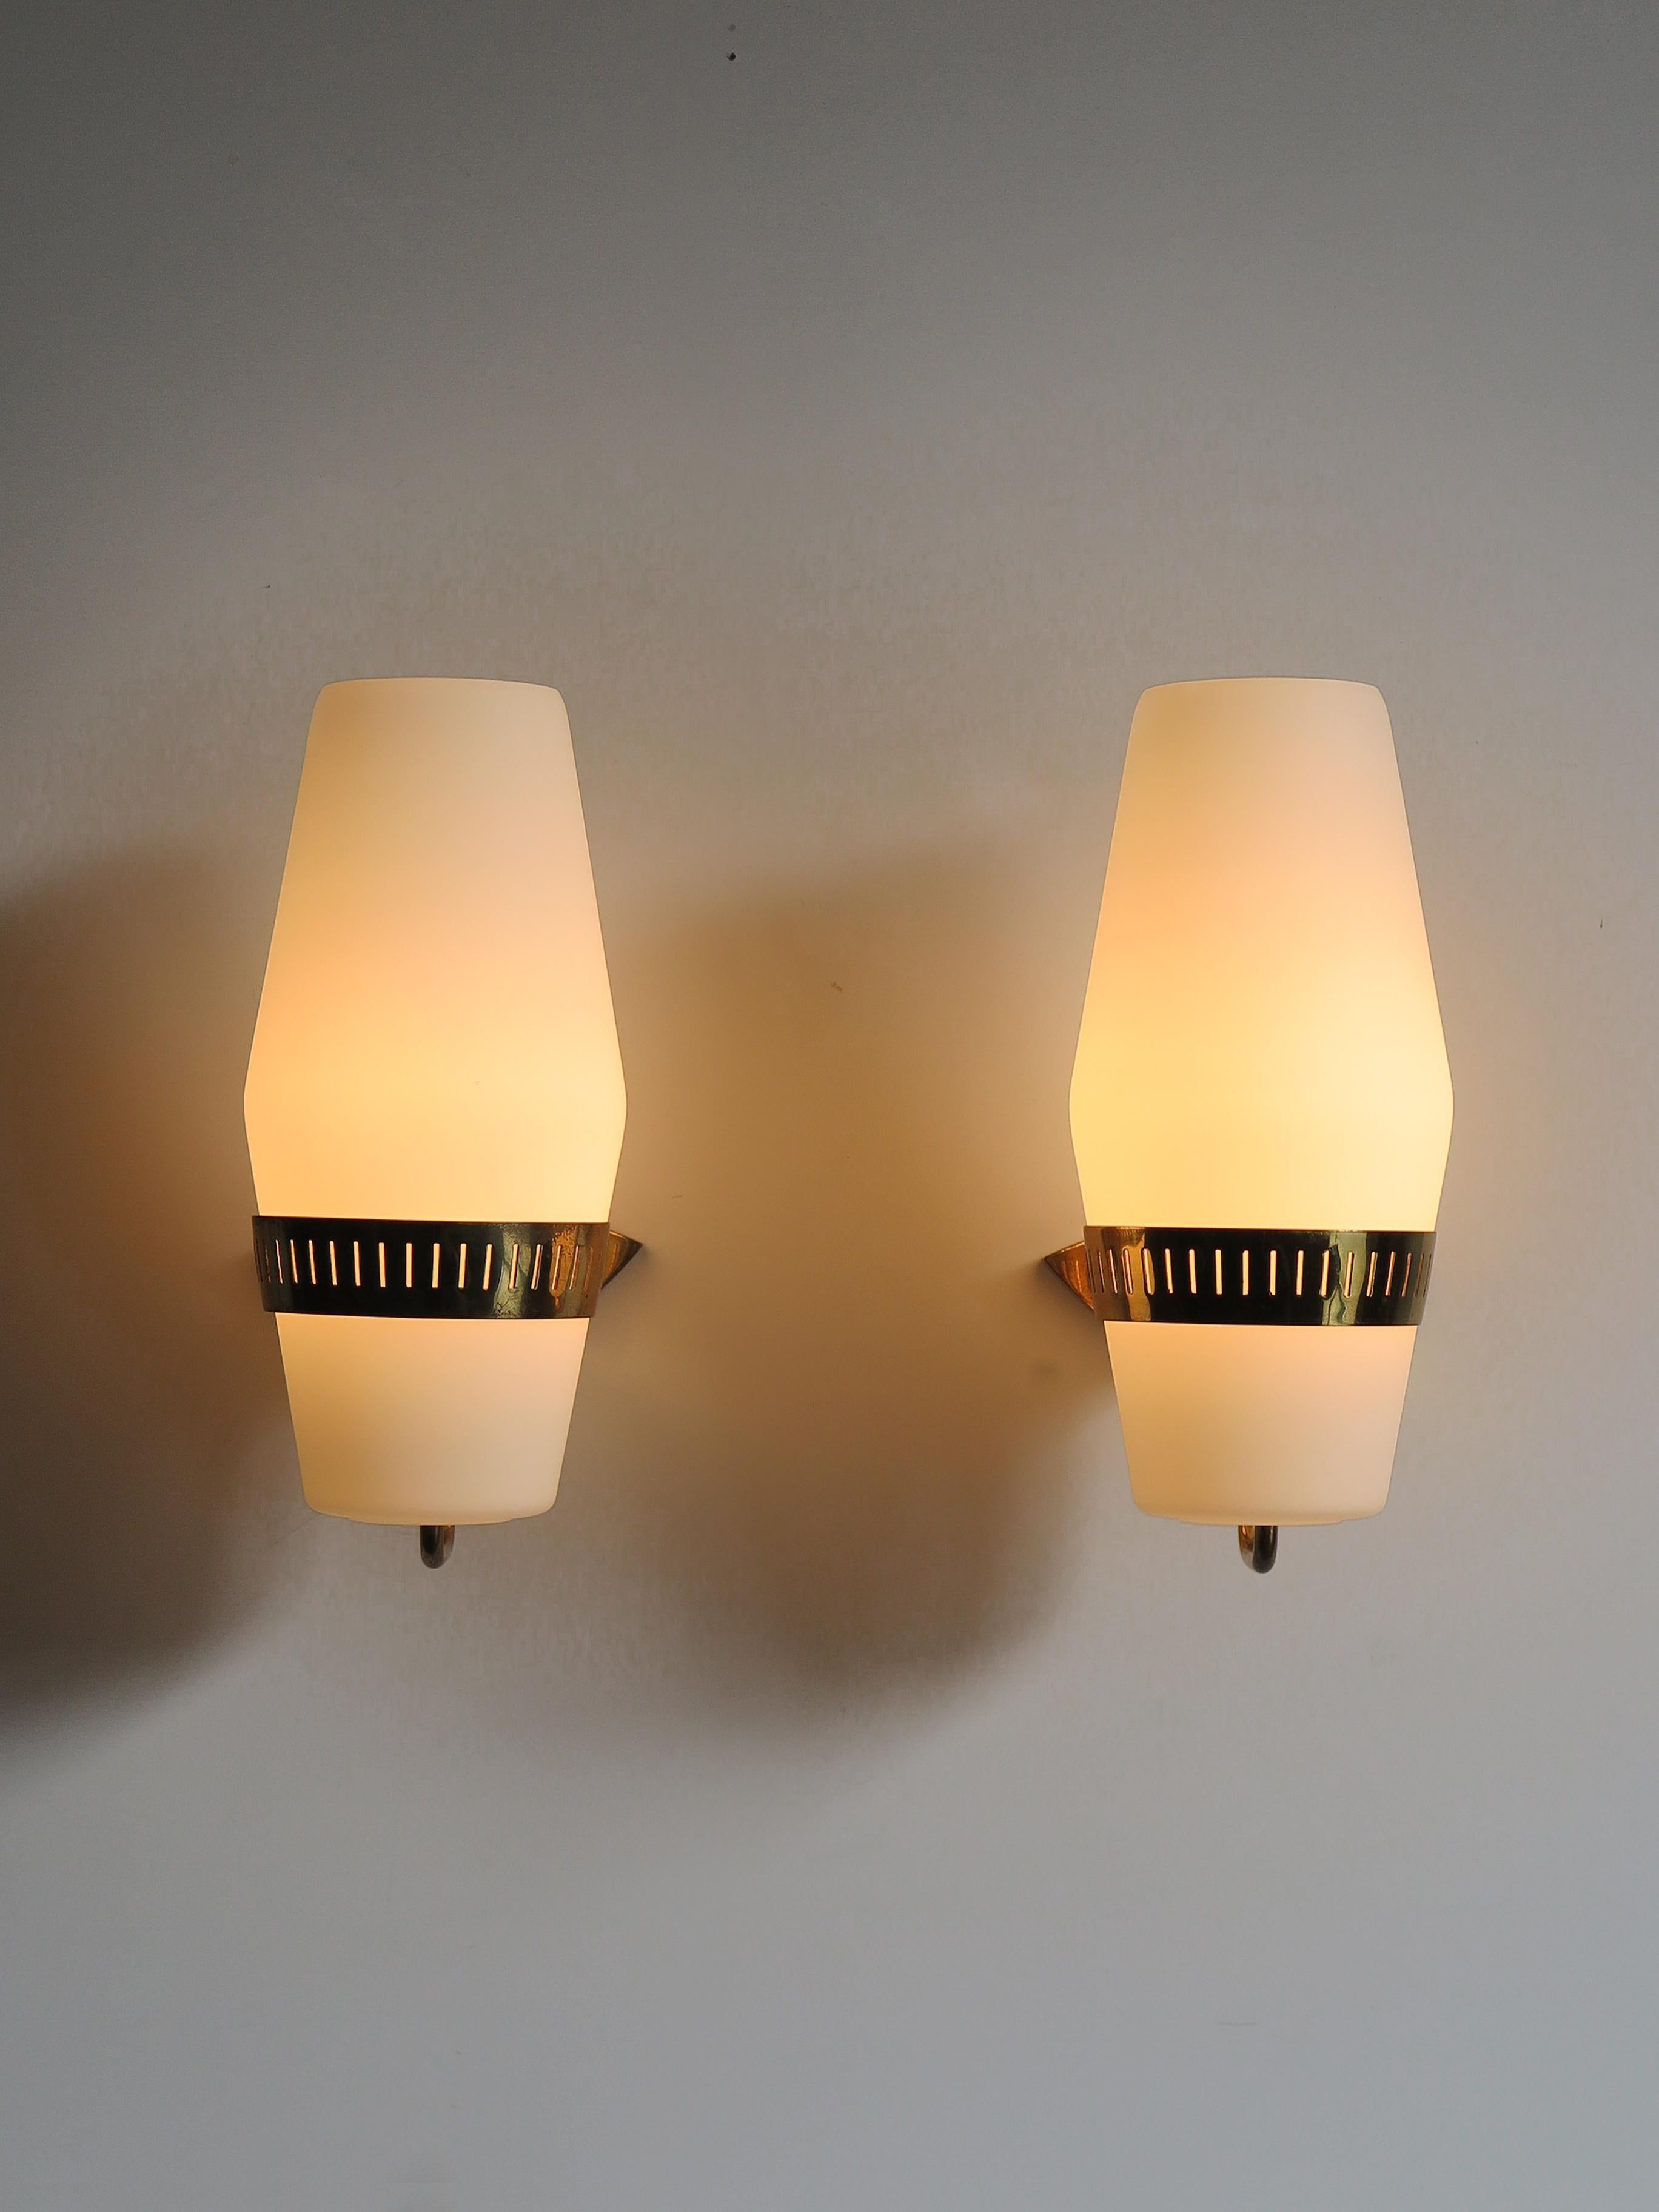 Italienische Mid-Century Modern Design große Wandlampen von Stilnovo aus den 1950er Jahren mit weißem Milchglas Diffusoren und Messingrahmen hergestellt.
Klebeetiketten des Herstellers.

Bitte beachten Sie, dass die Lampen original aus der Zeit